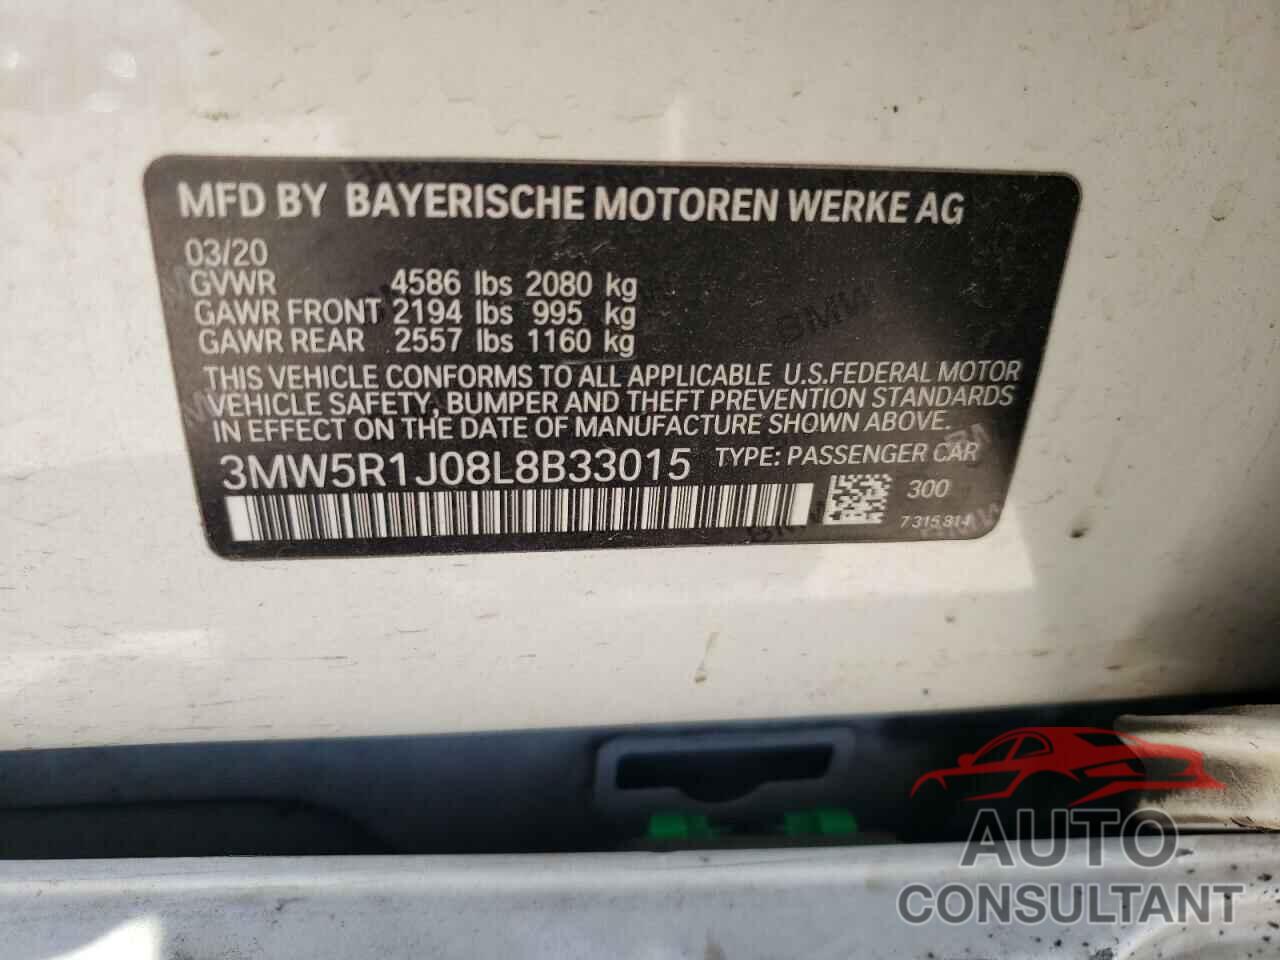 BMW 3 SERIES 2020 - 3MW5R1J08L8B33015